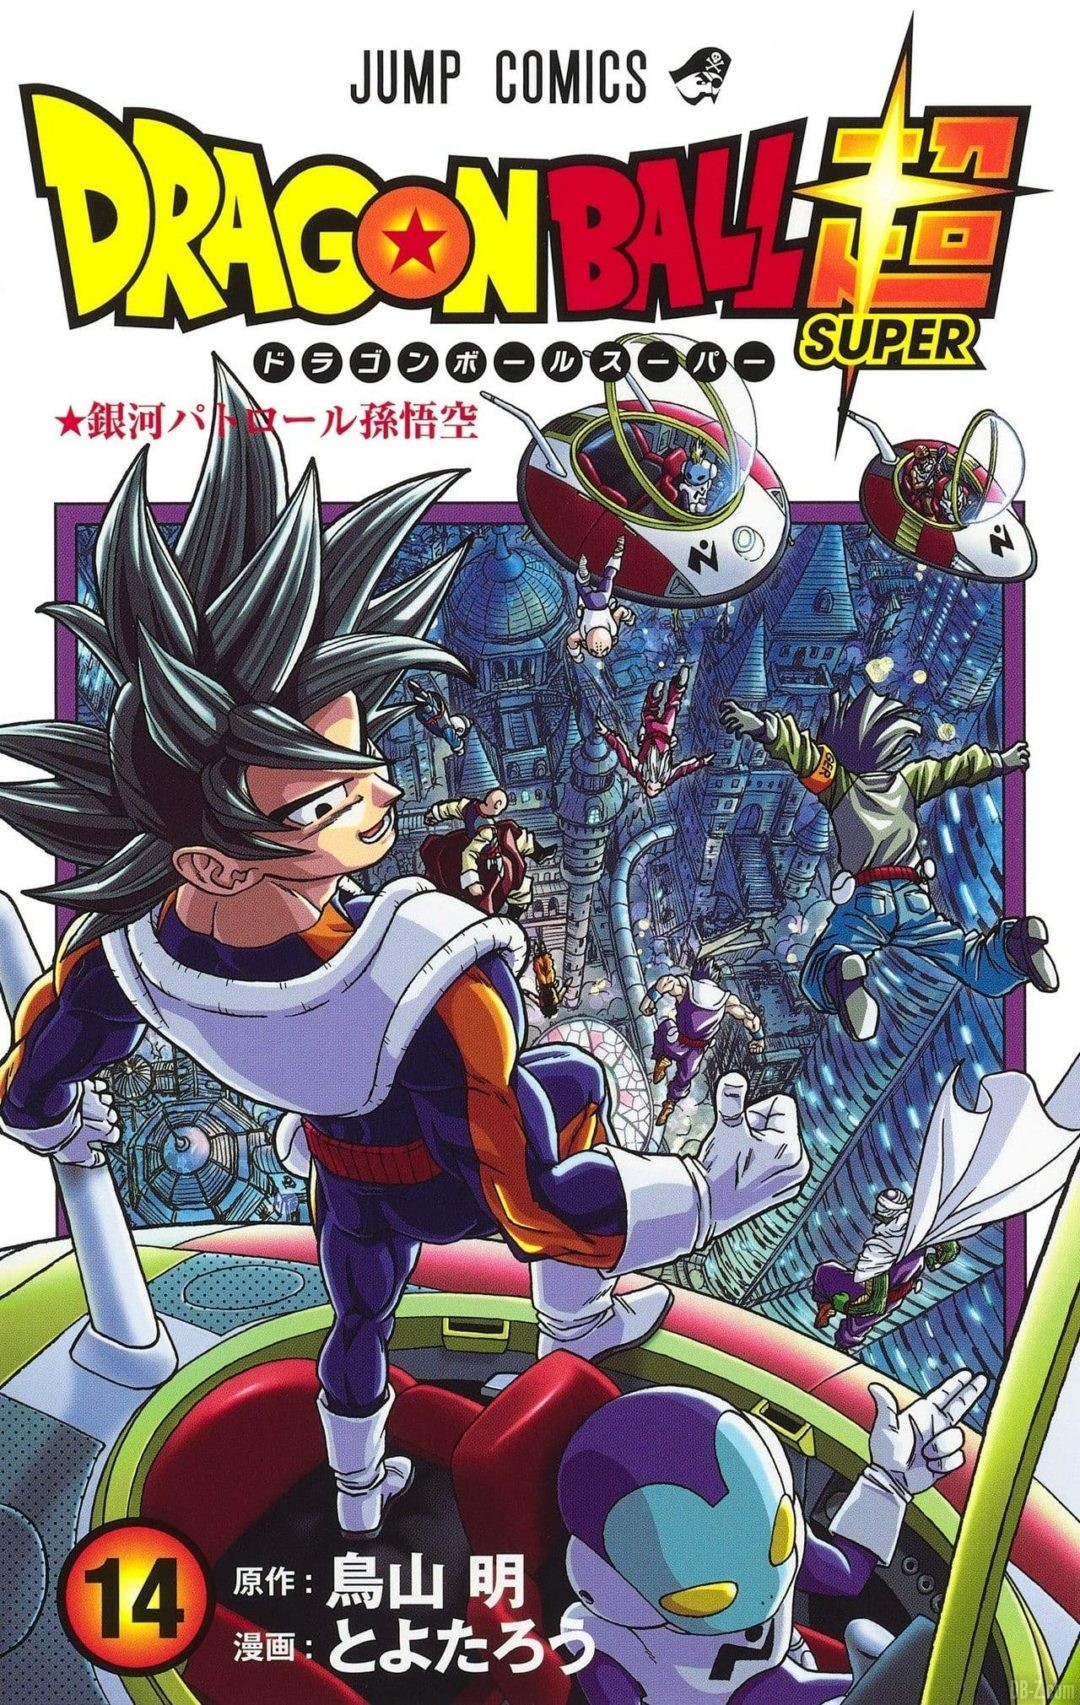 Cover Tome 14 Dragon Ball Super HD